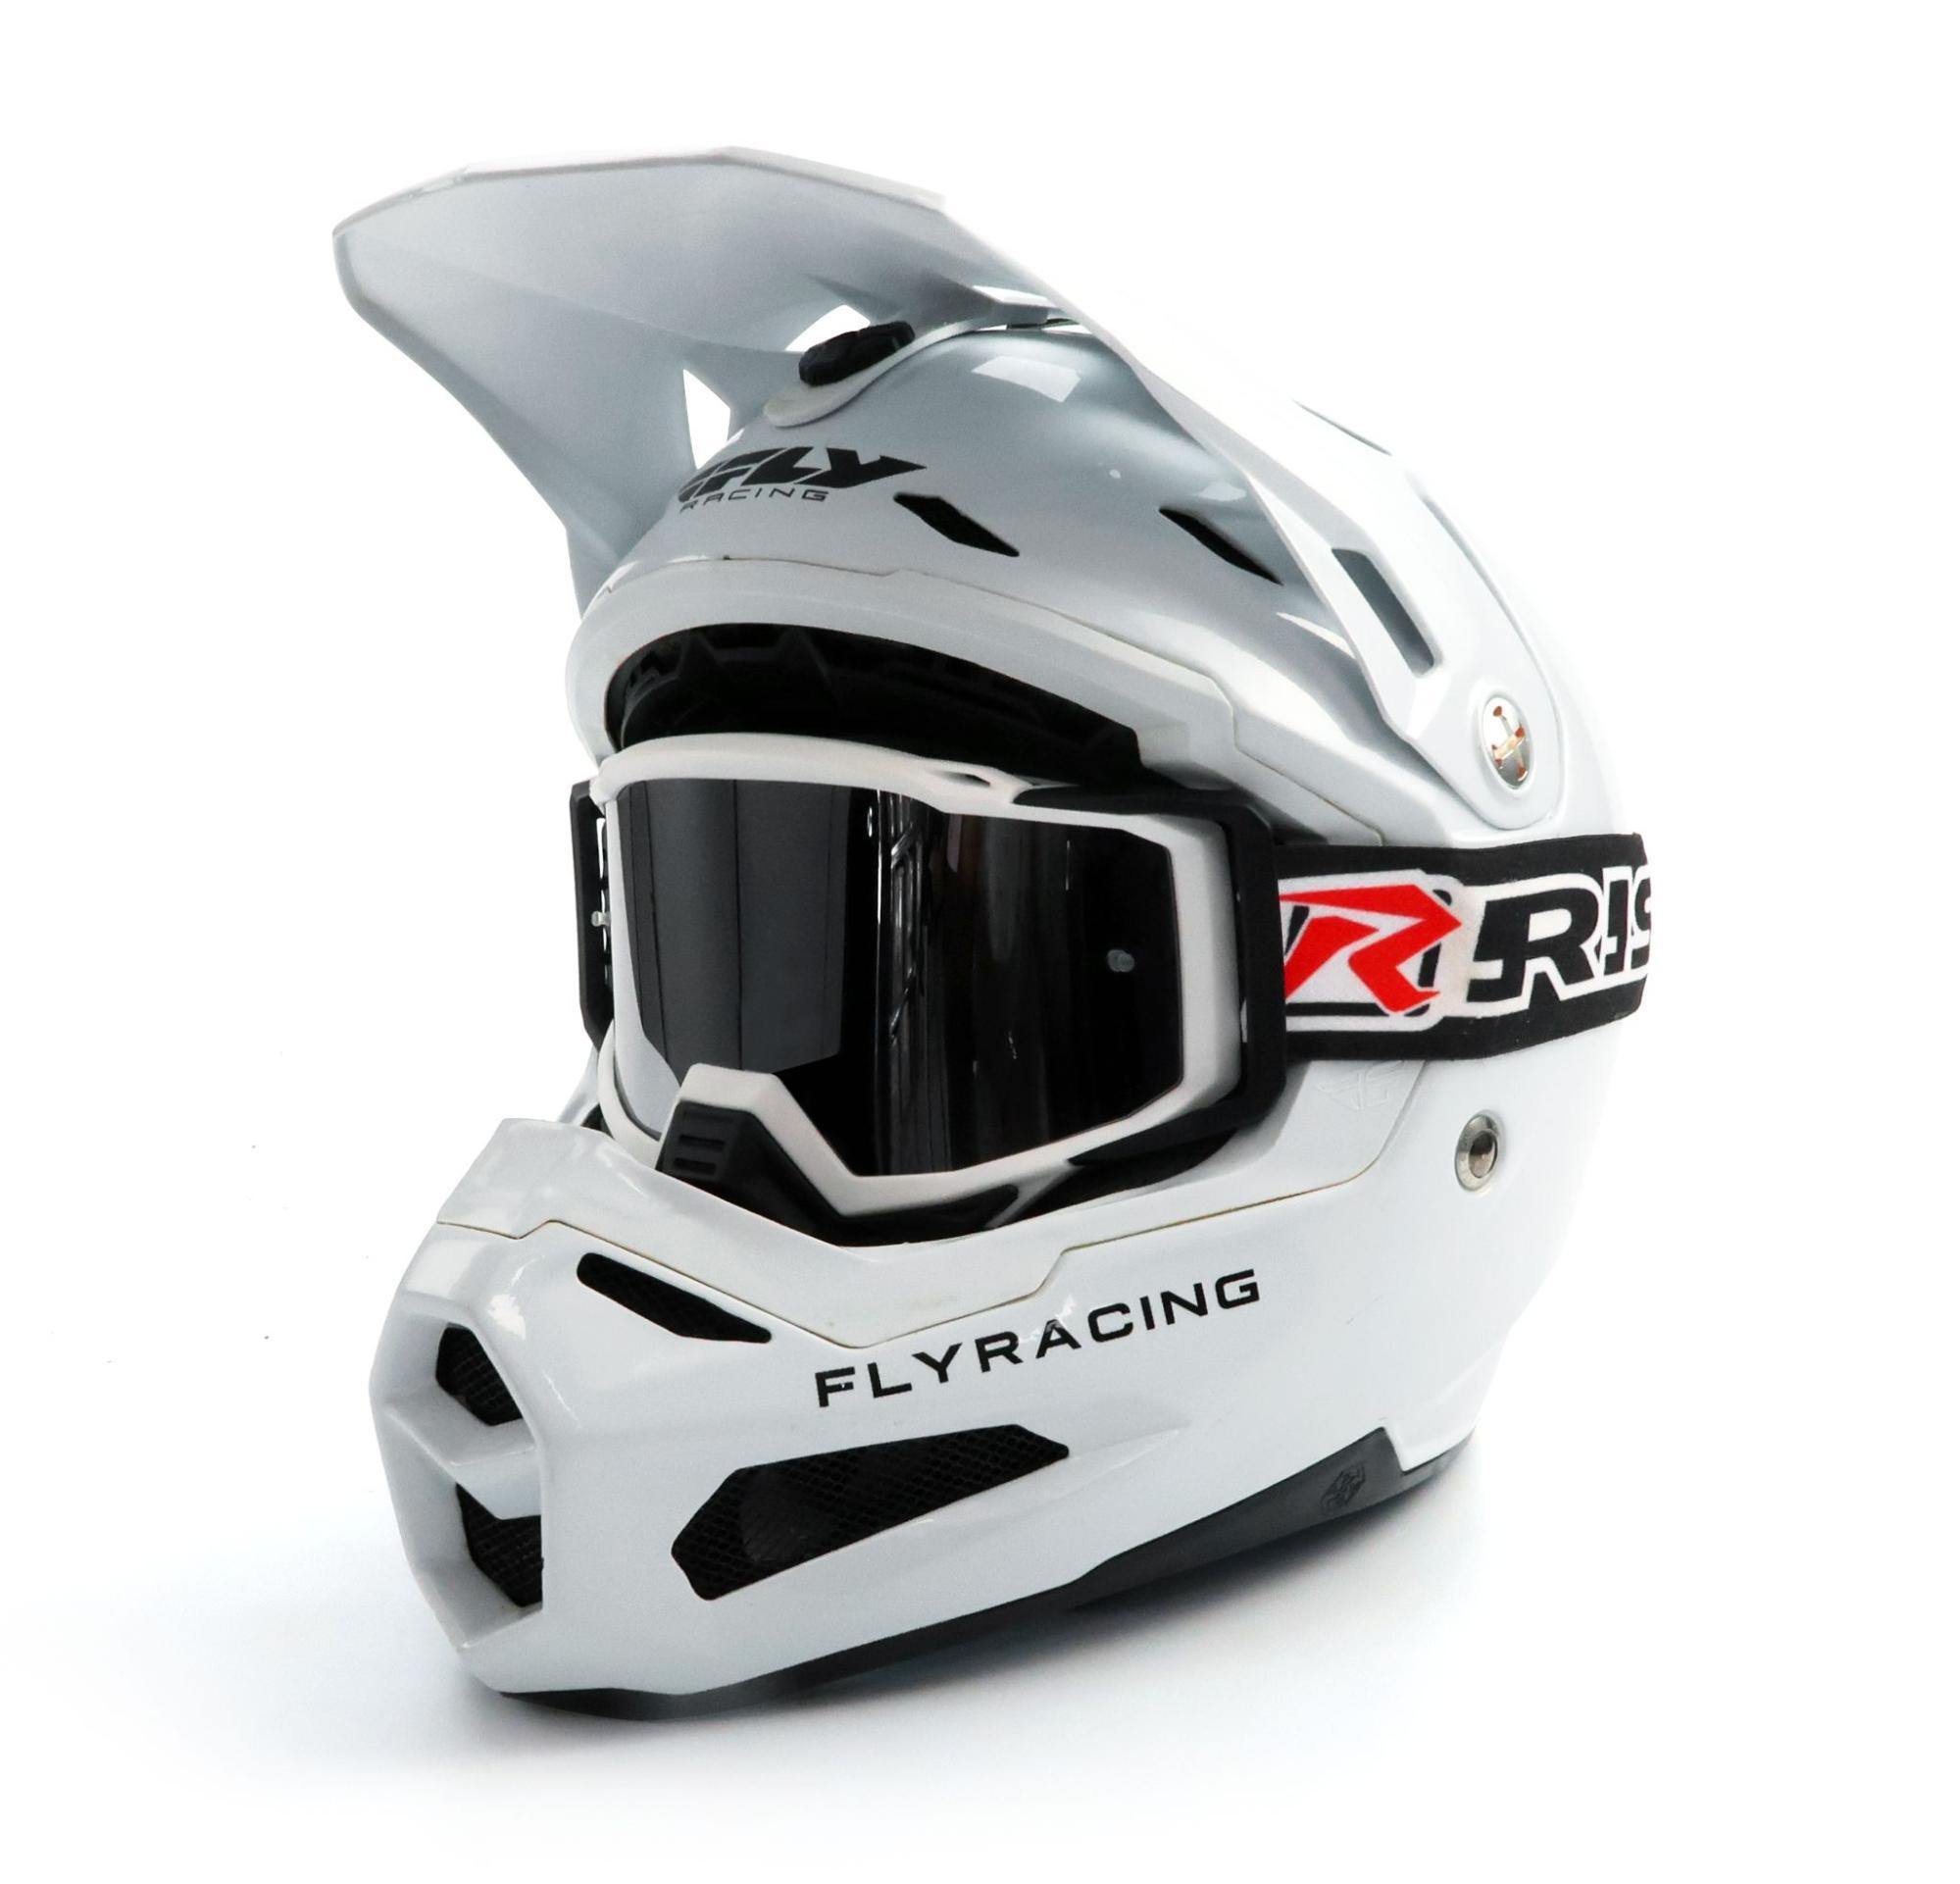 Fox Dirt Bike and Motocross Helmets